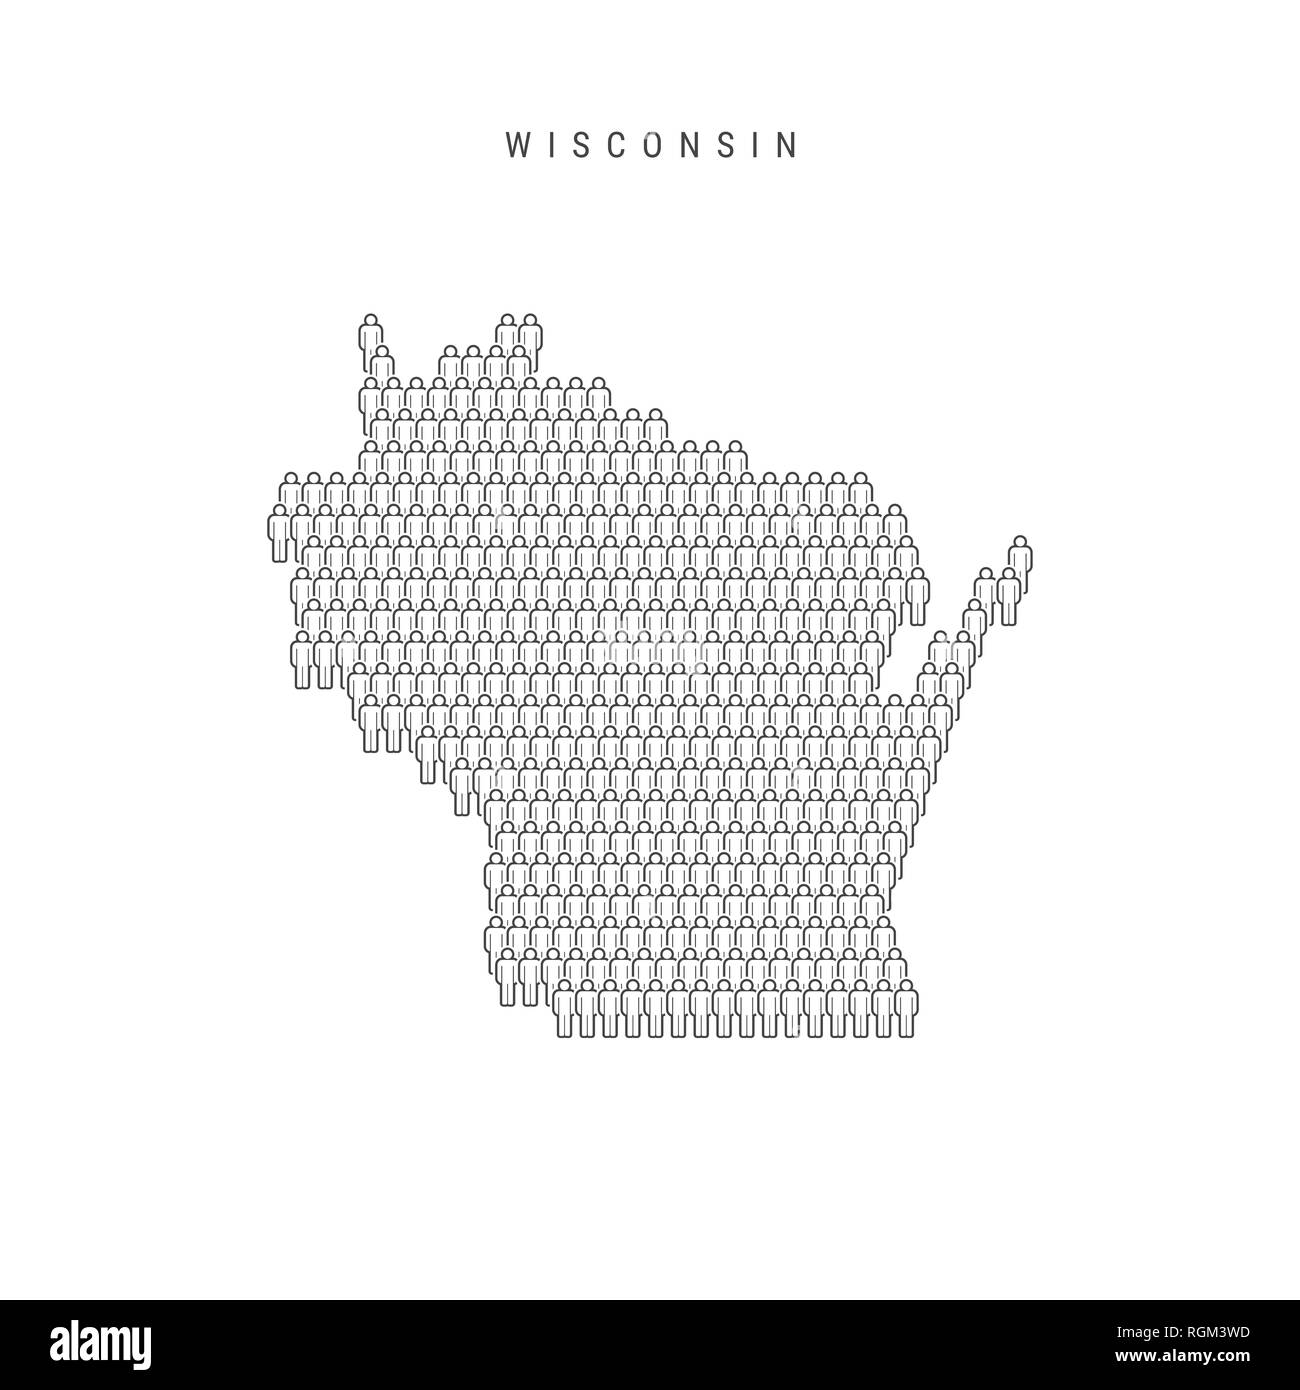 Leute Karte von Wisconsin, US-Staat. Stilisierte Silhouette, Leute in der Form einer Karte von Wisconsin. Wisconsin Bevölkerung. Abbildung: Isolierte o Stockfoto